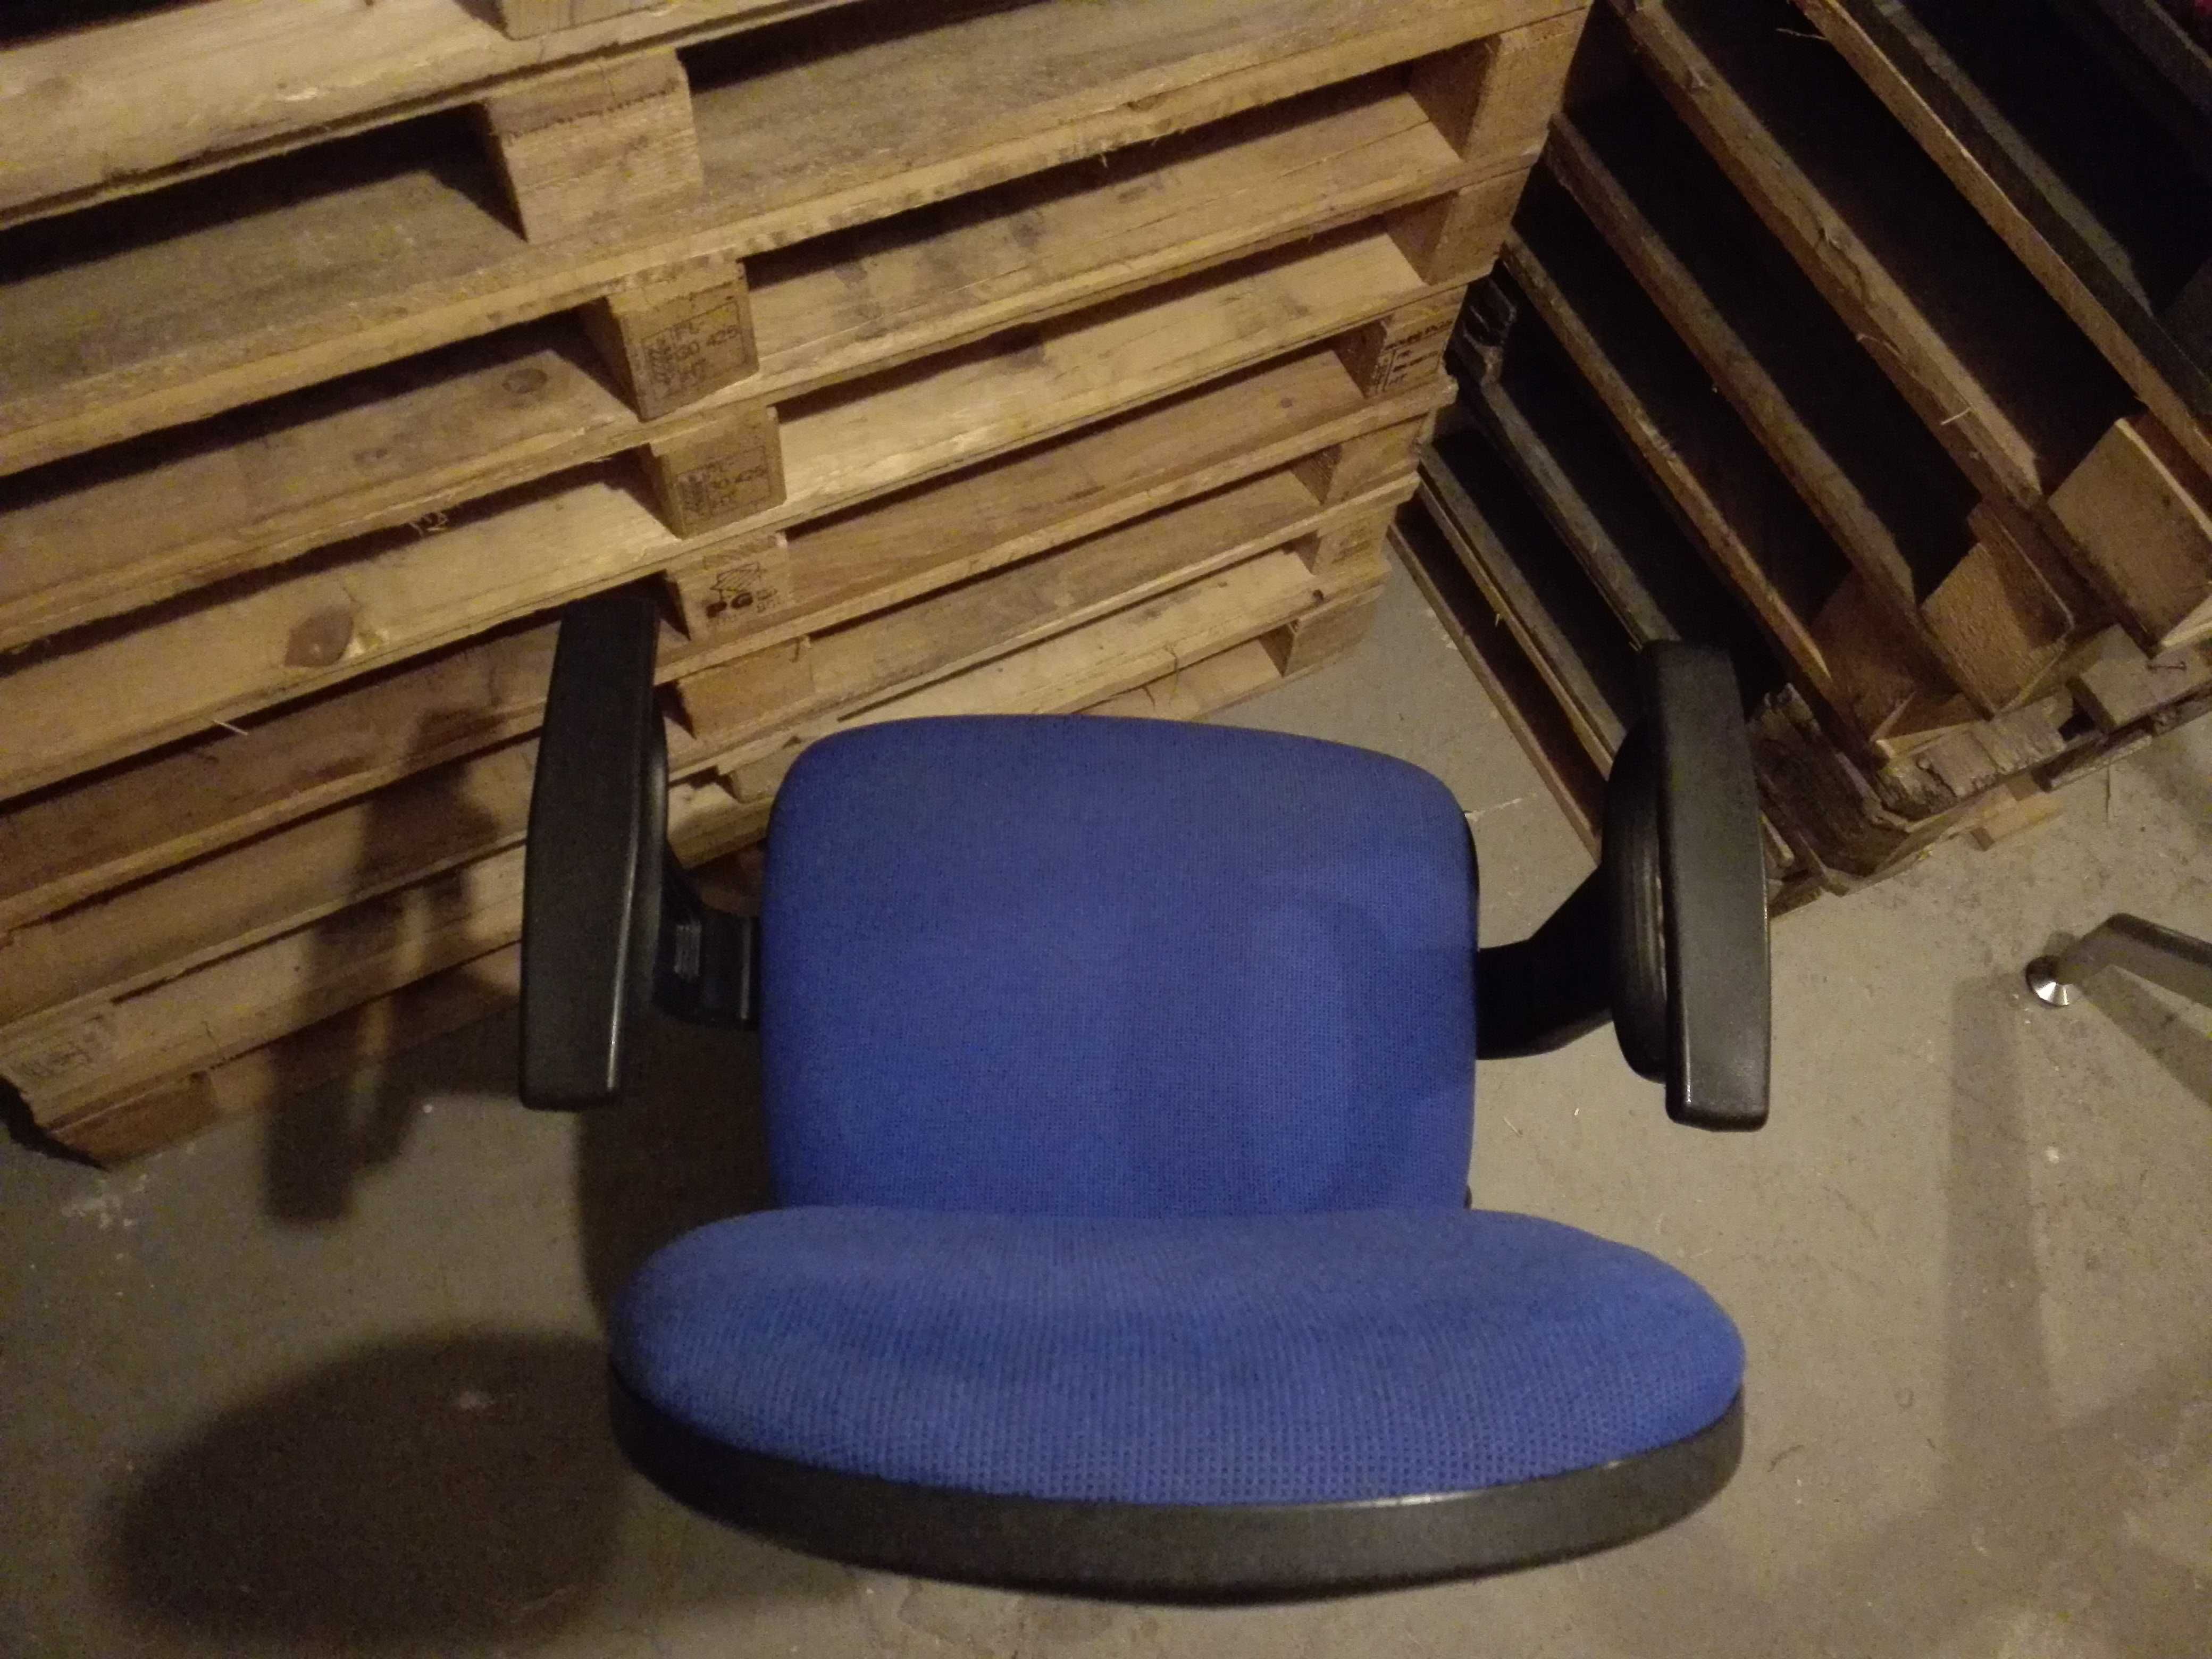 Używane krzesło biurowe. Krzesło.